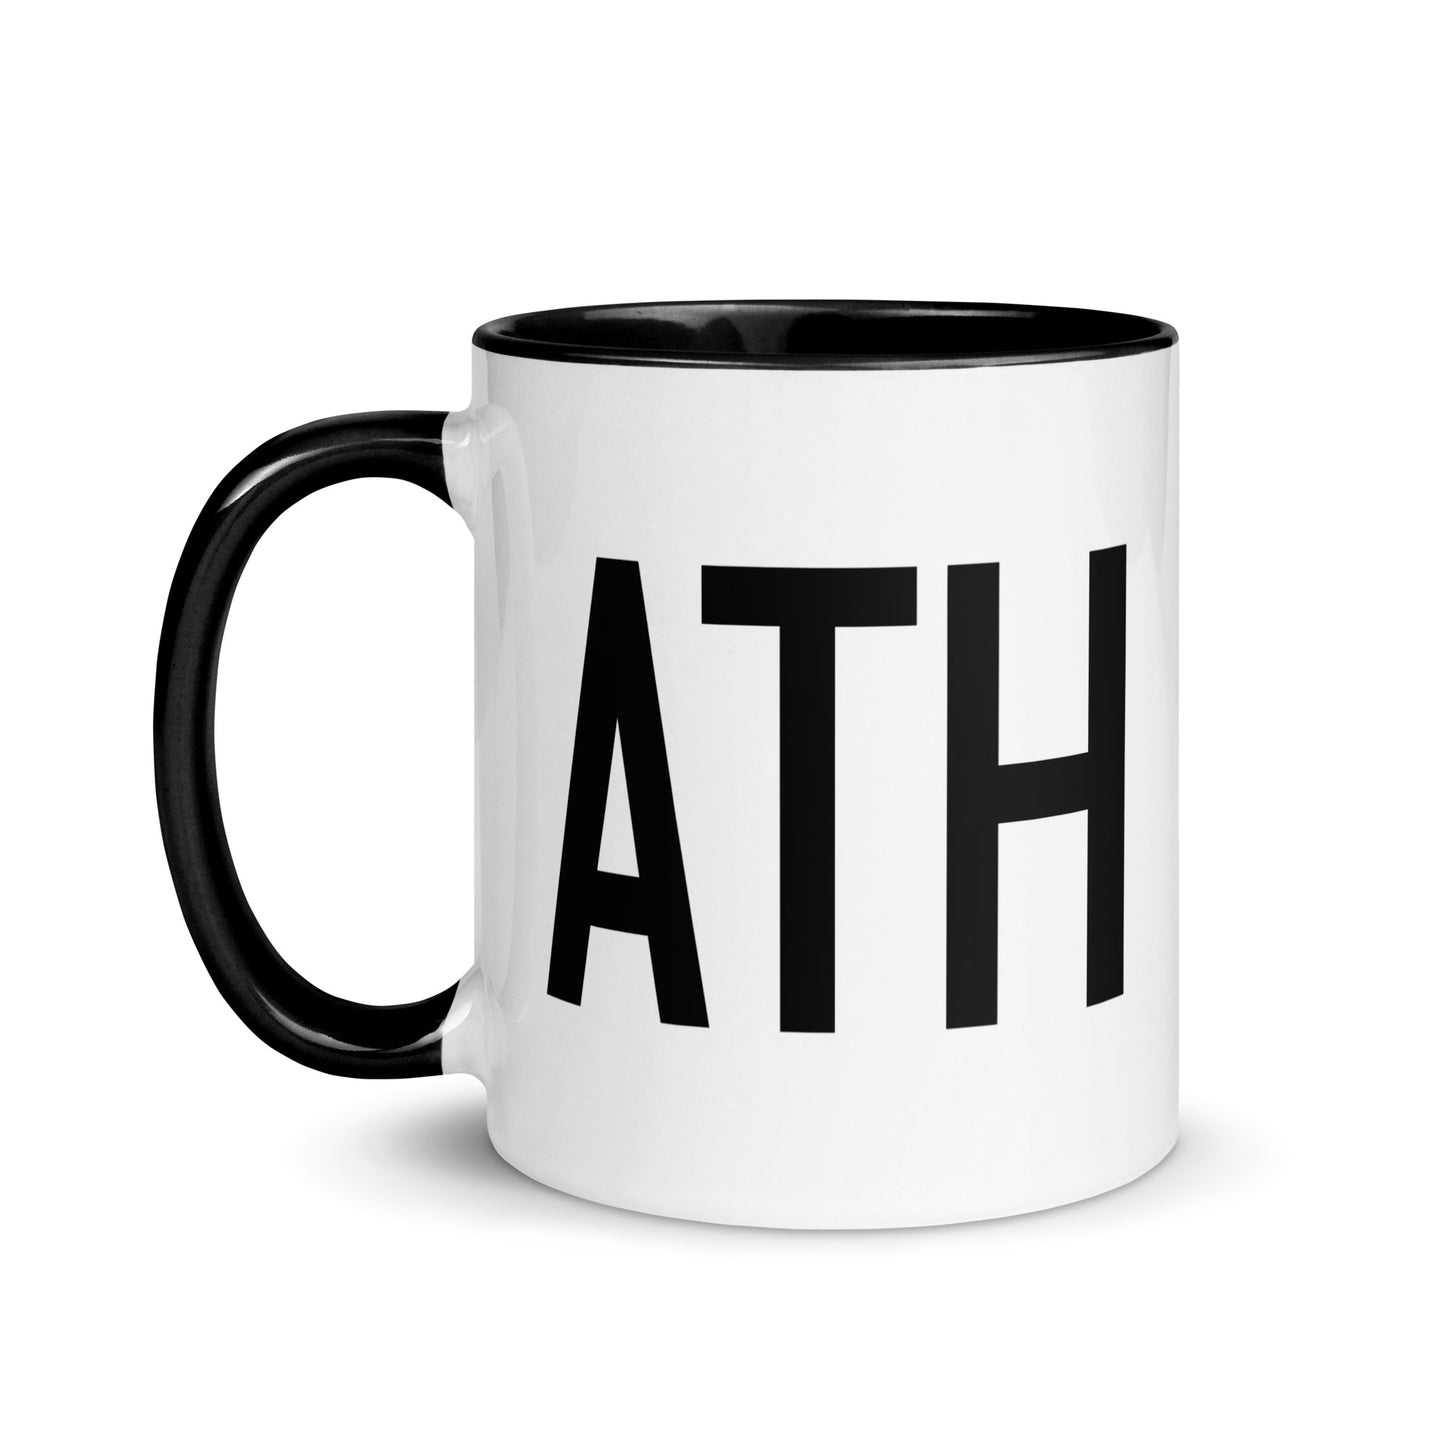 Aviation-Theme Coffee Mug - Black • ATH Athens • YHM Designs - Image 03